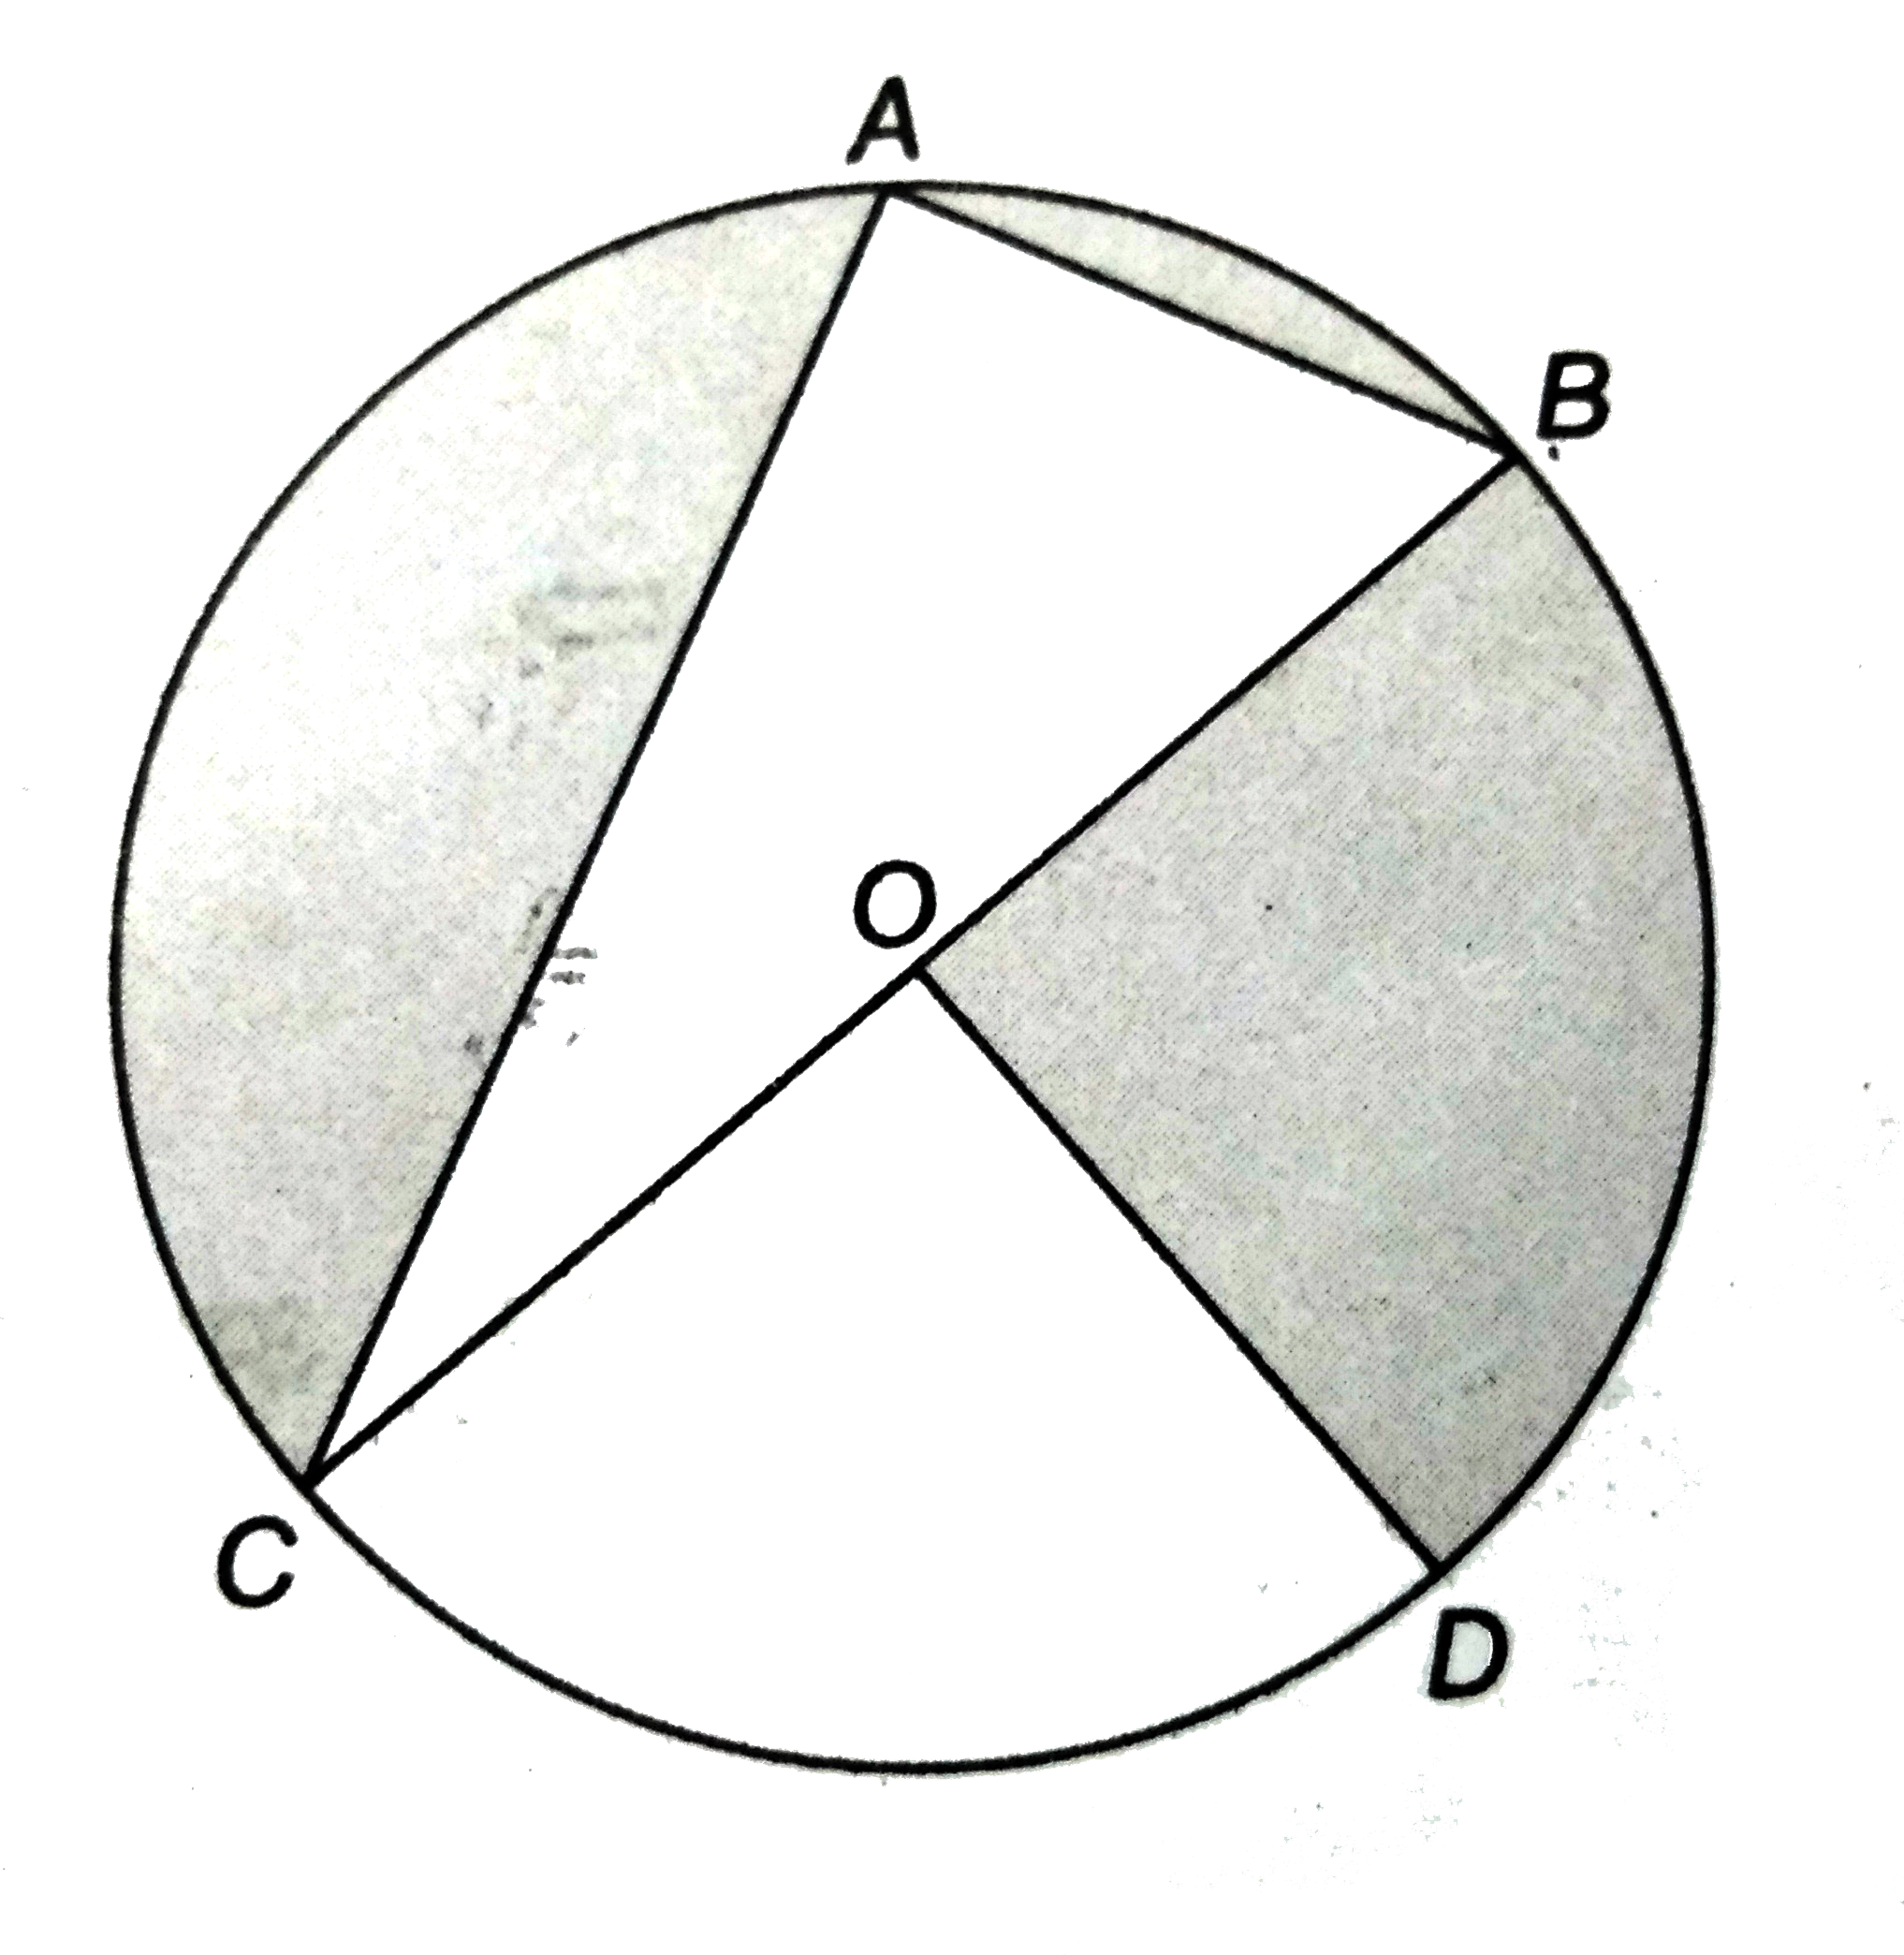 संलग्न  आकृति  में , O एक वृत्त का केंद्र है जिसमें AC = 24 सेमी ,AB = 7  सेमी  और angleBOD = 90^(@) है । छायांकित  भाग का क्षेत्रफल  ज्ञात कीजिए ।